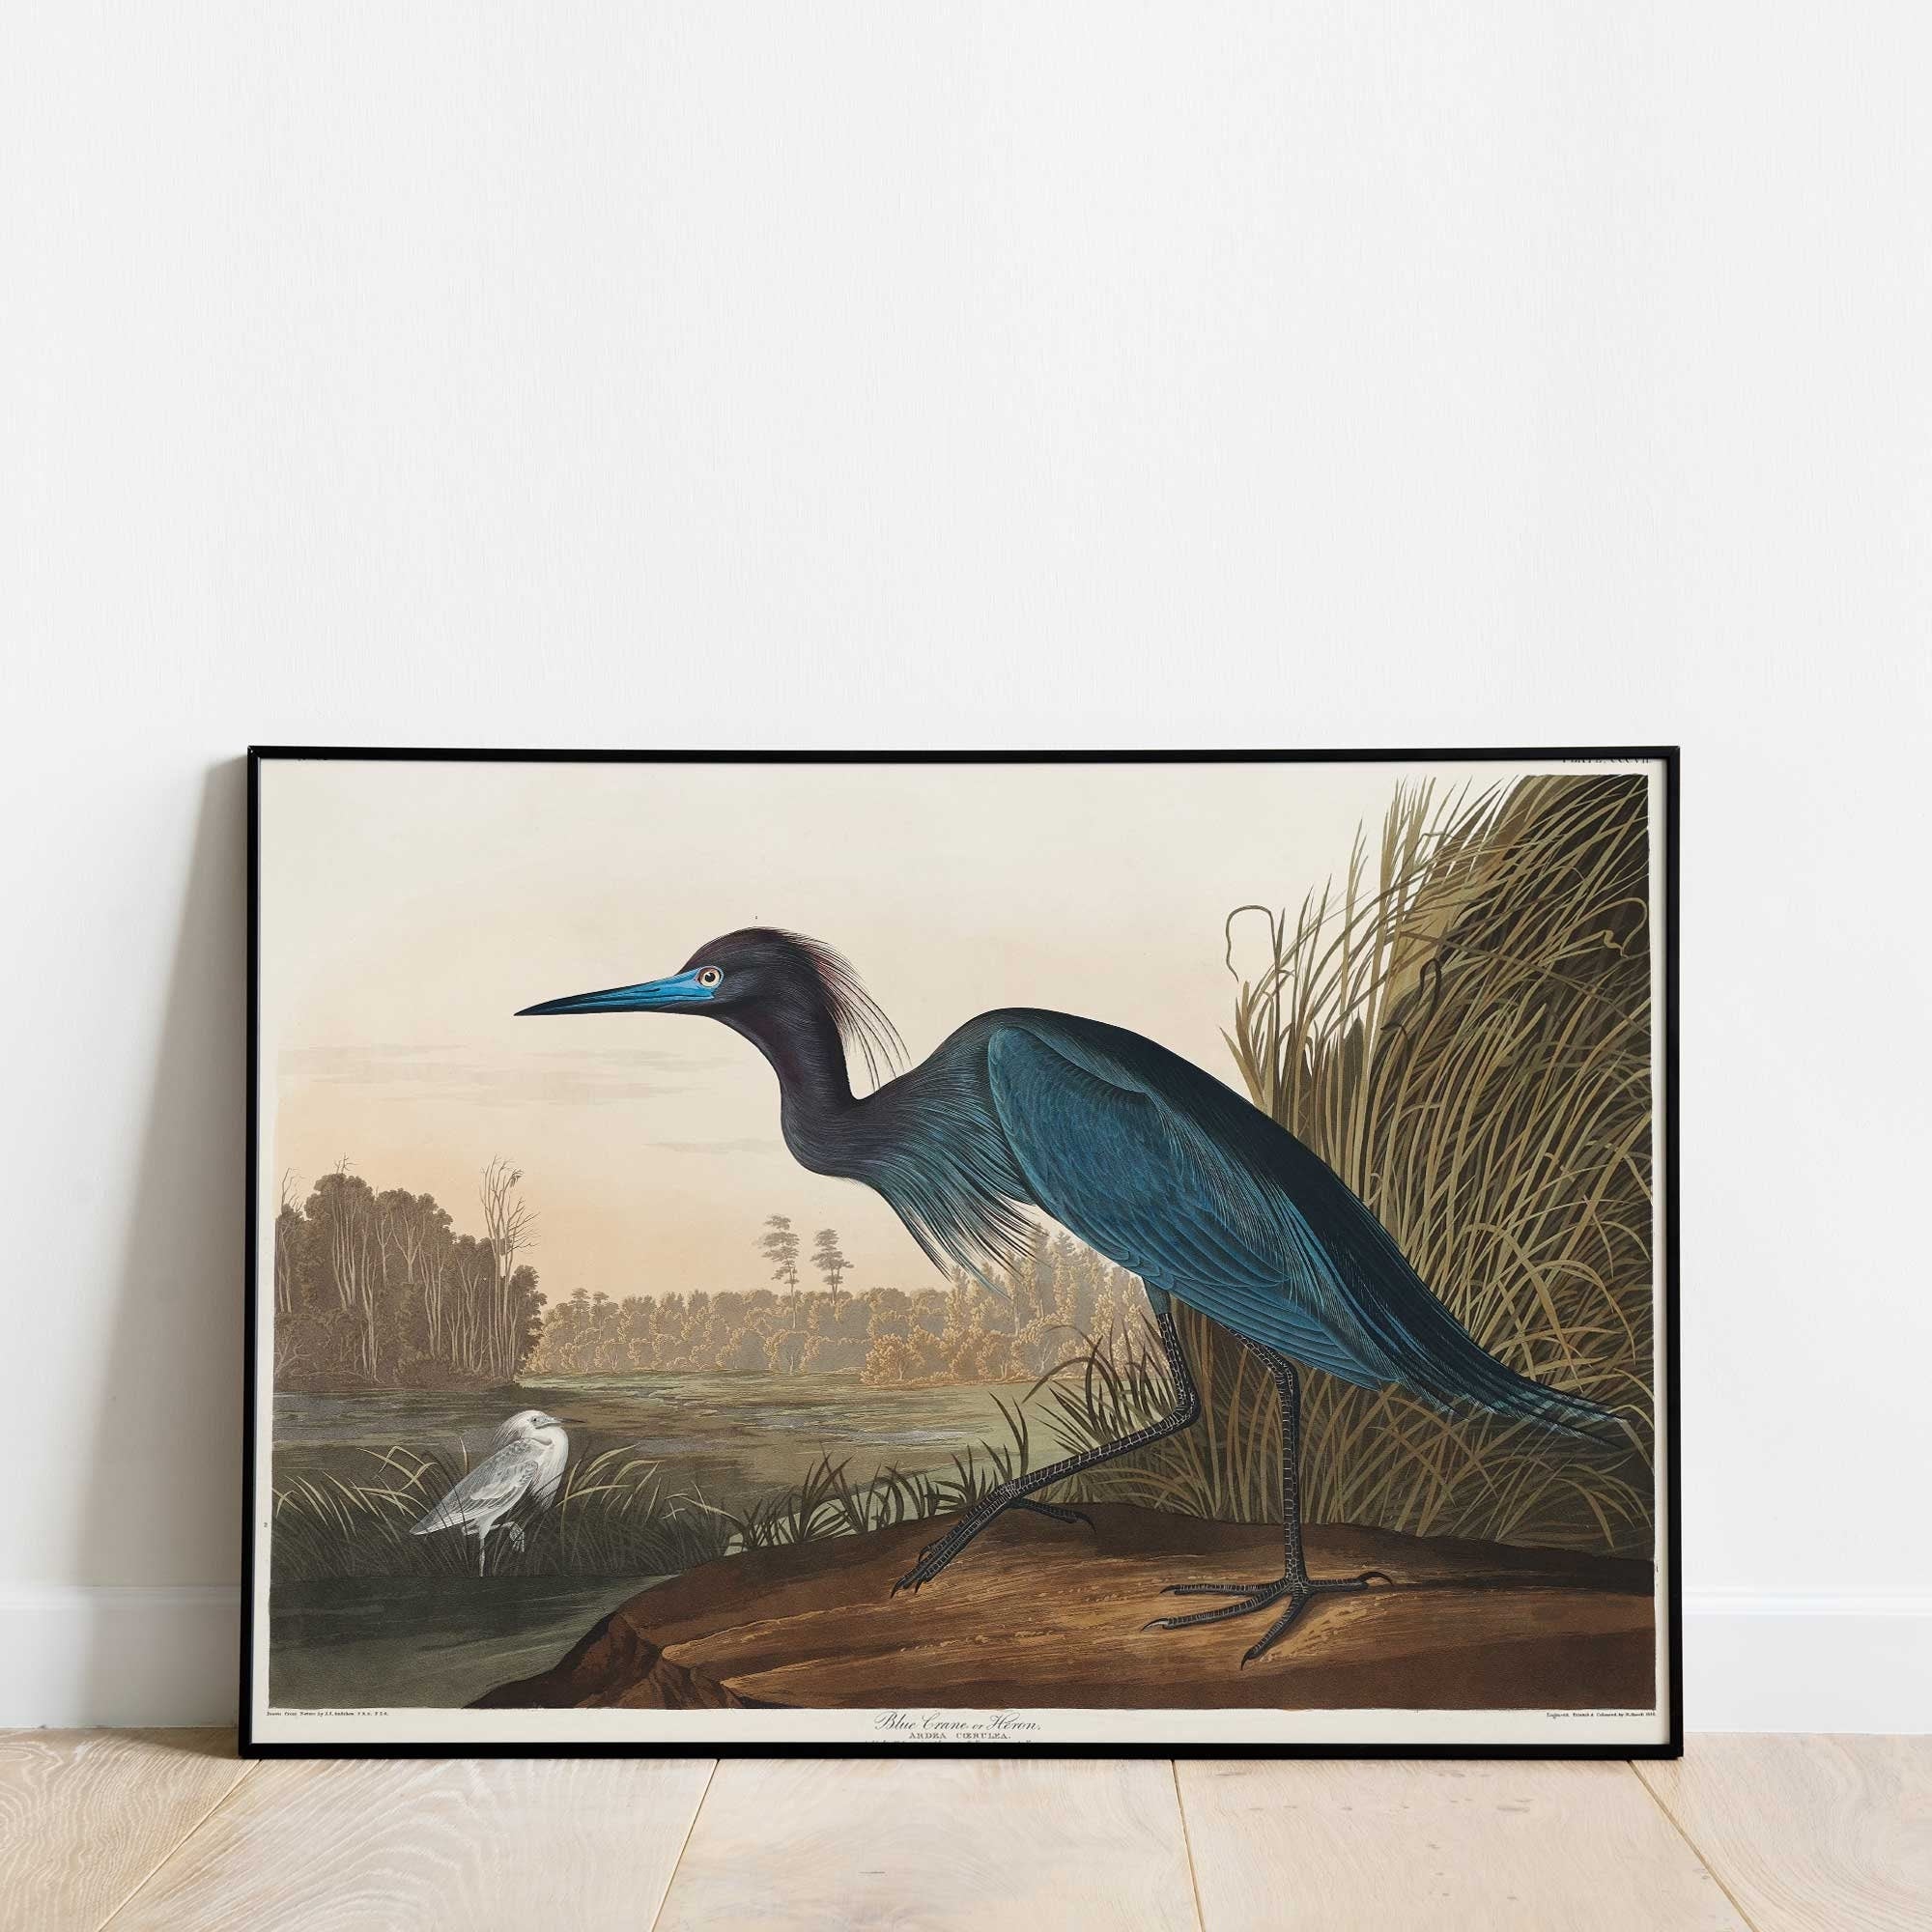 Blue Crane or Heron - Hartsholme Prints